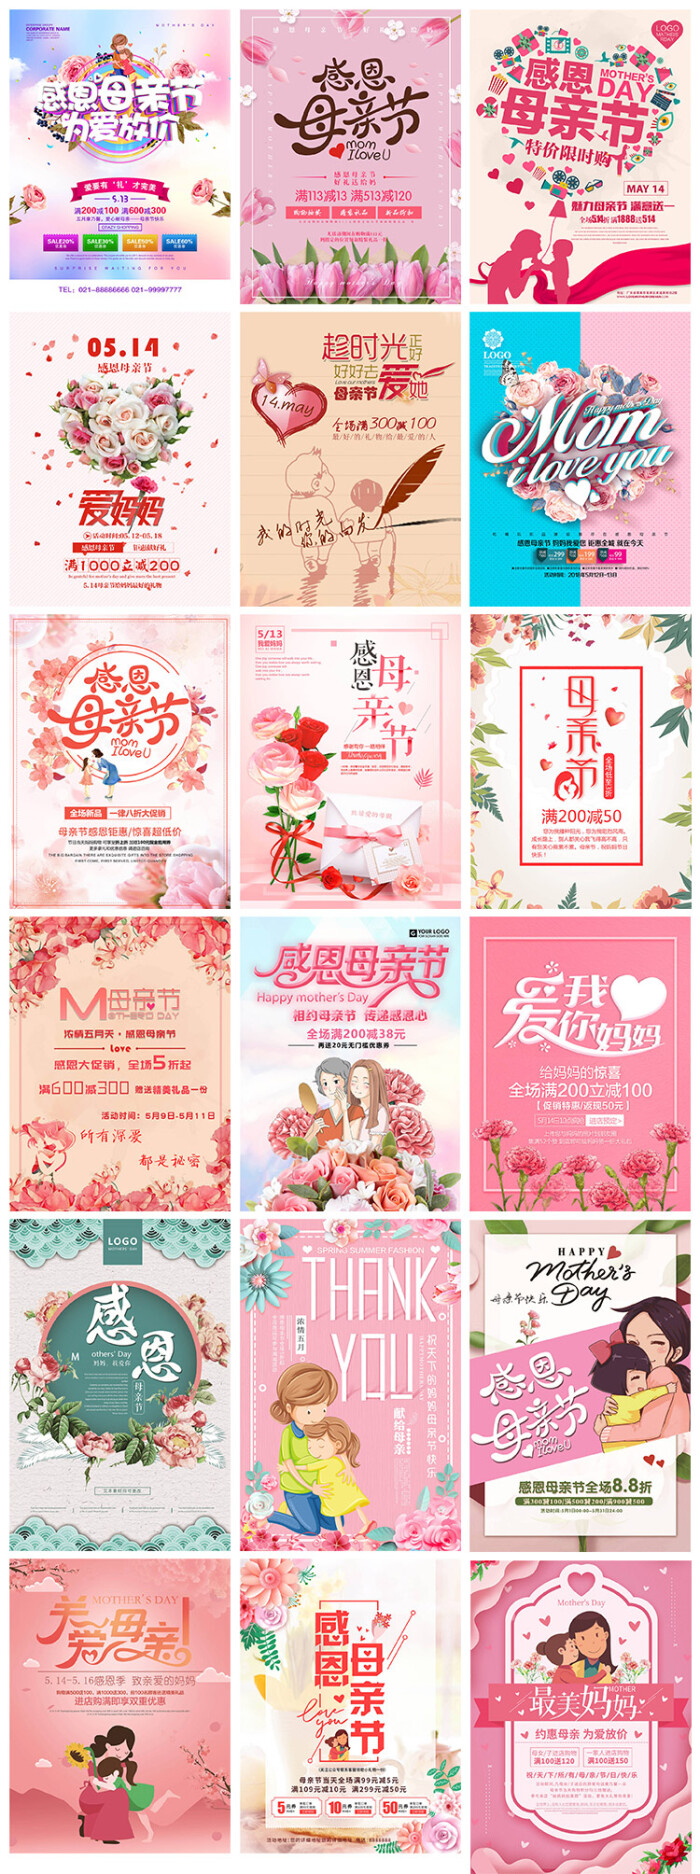 母亲节感恩回馈促销康乃馨最美妈妈鲜花花卉海报设计psd素材模板